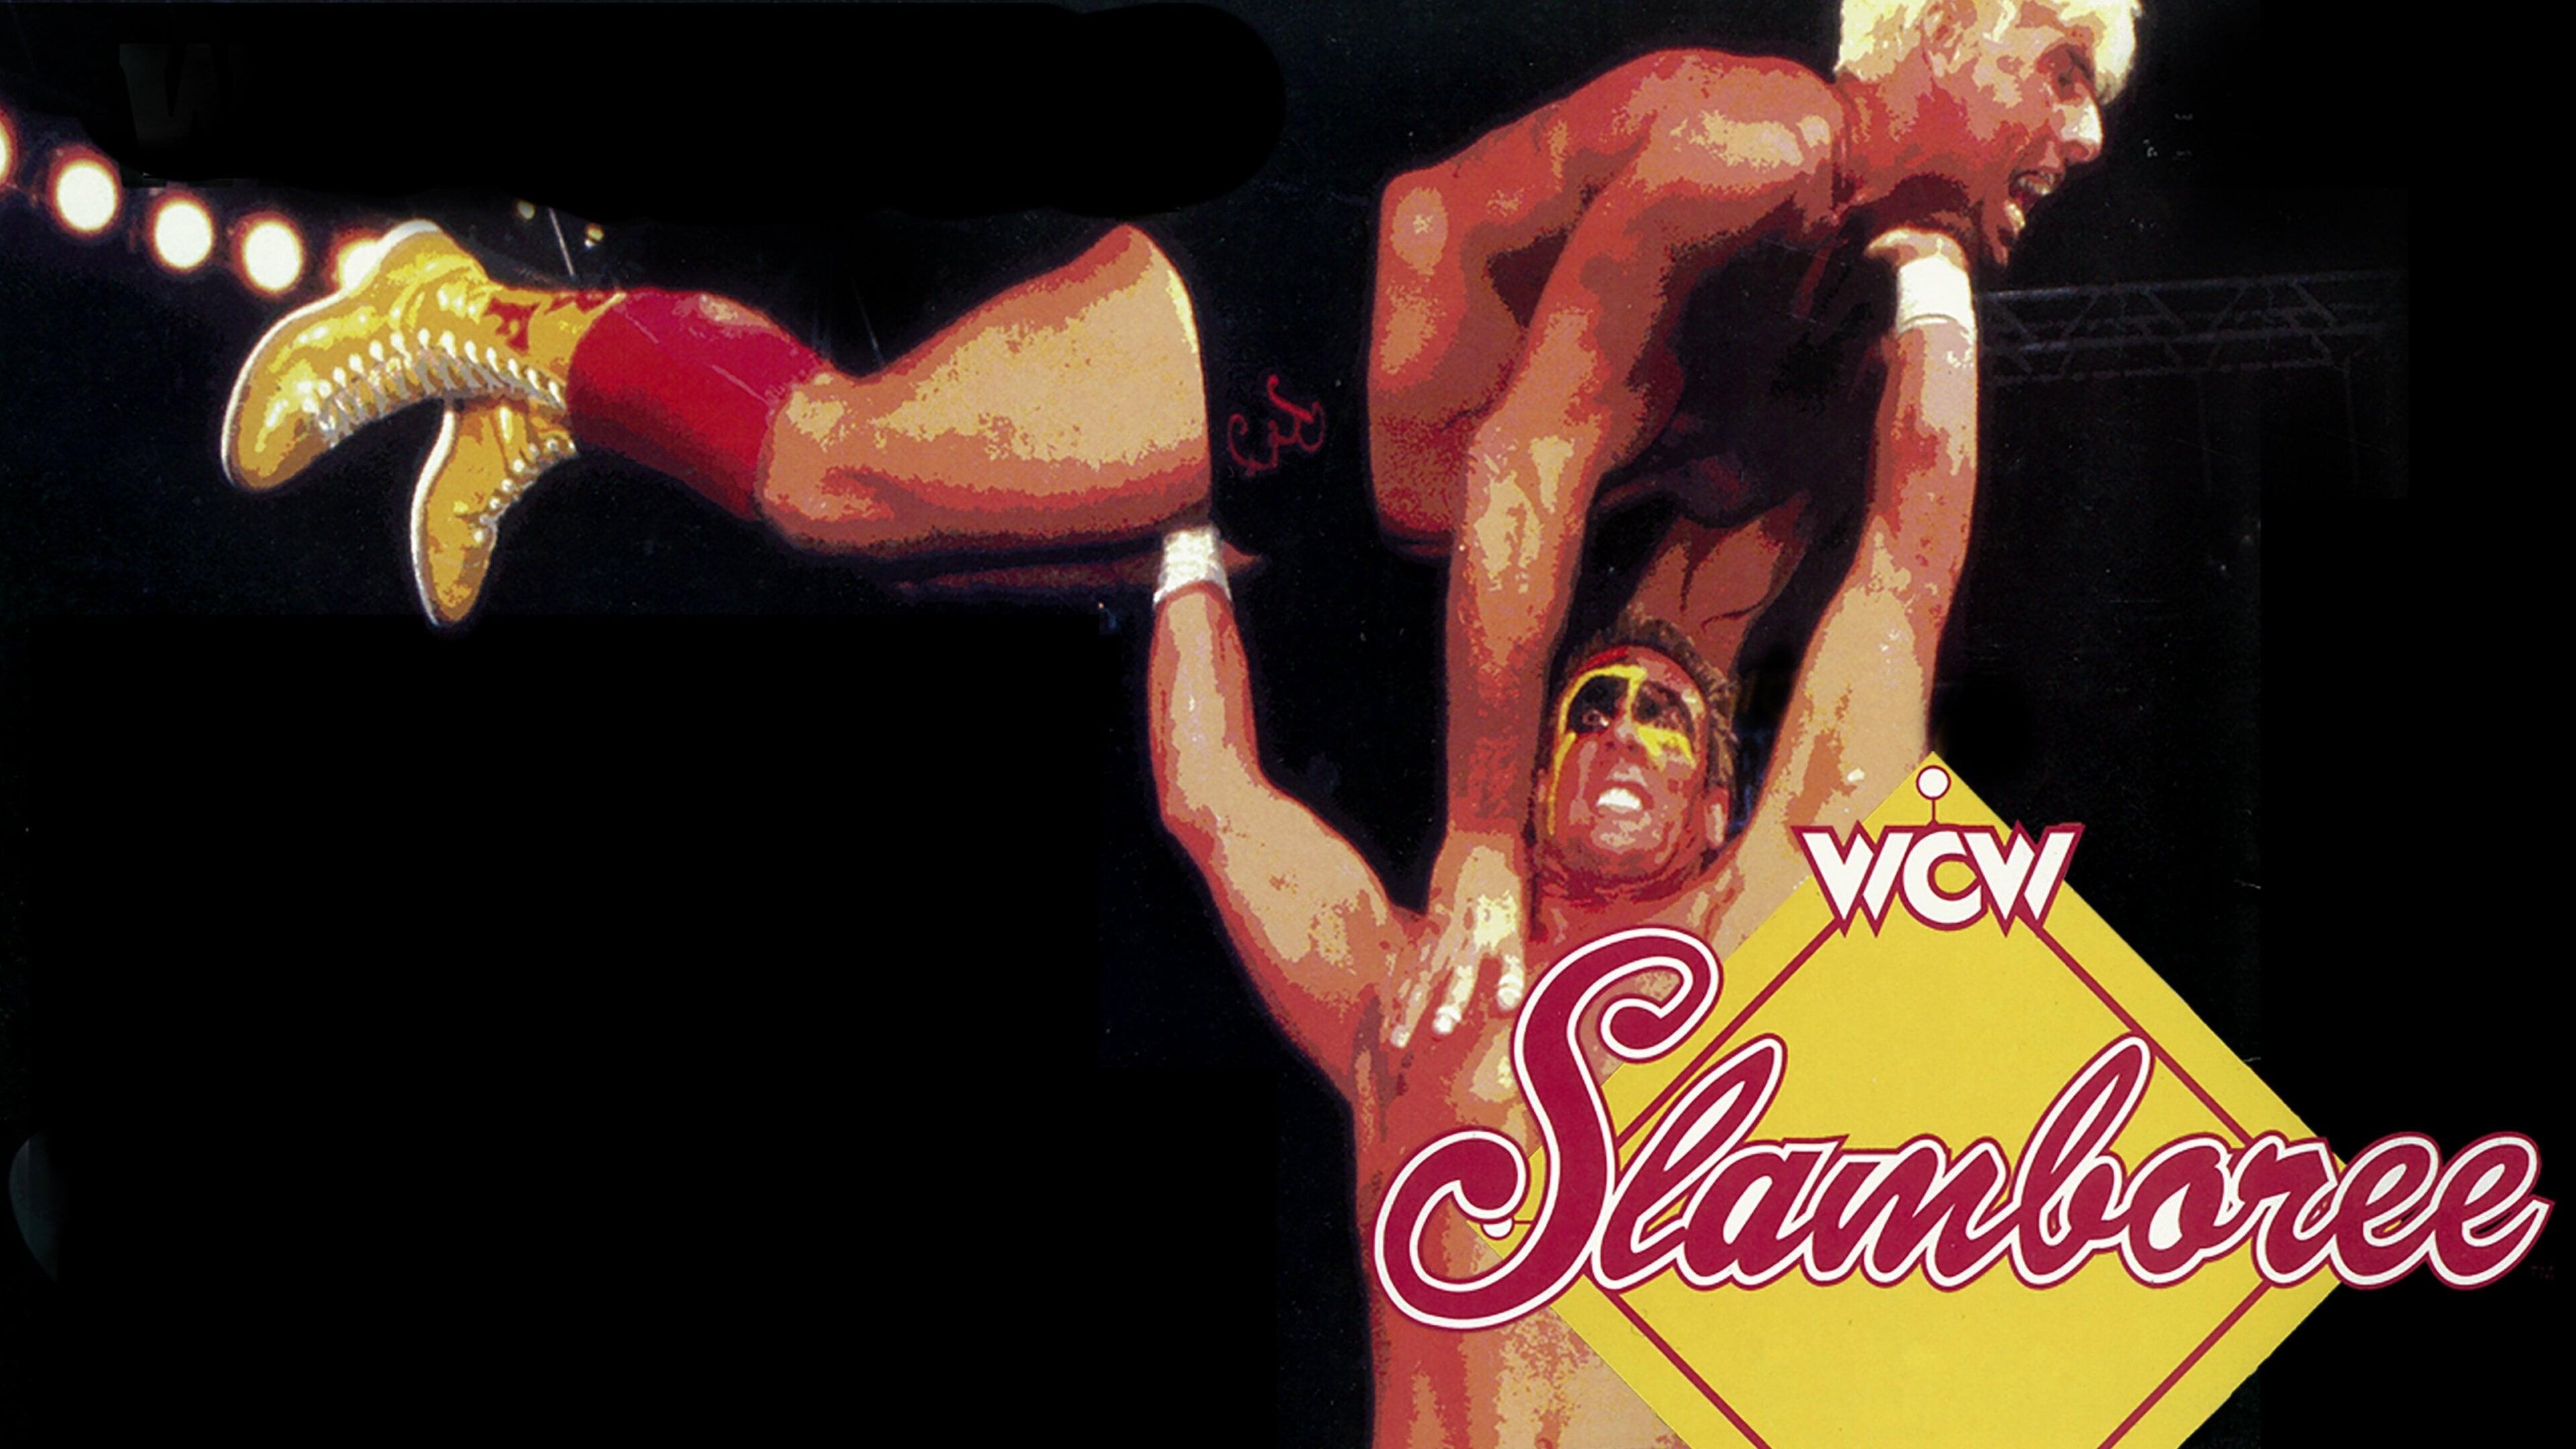 WCW Slamboree 1996 backdrop